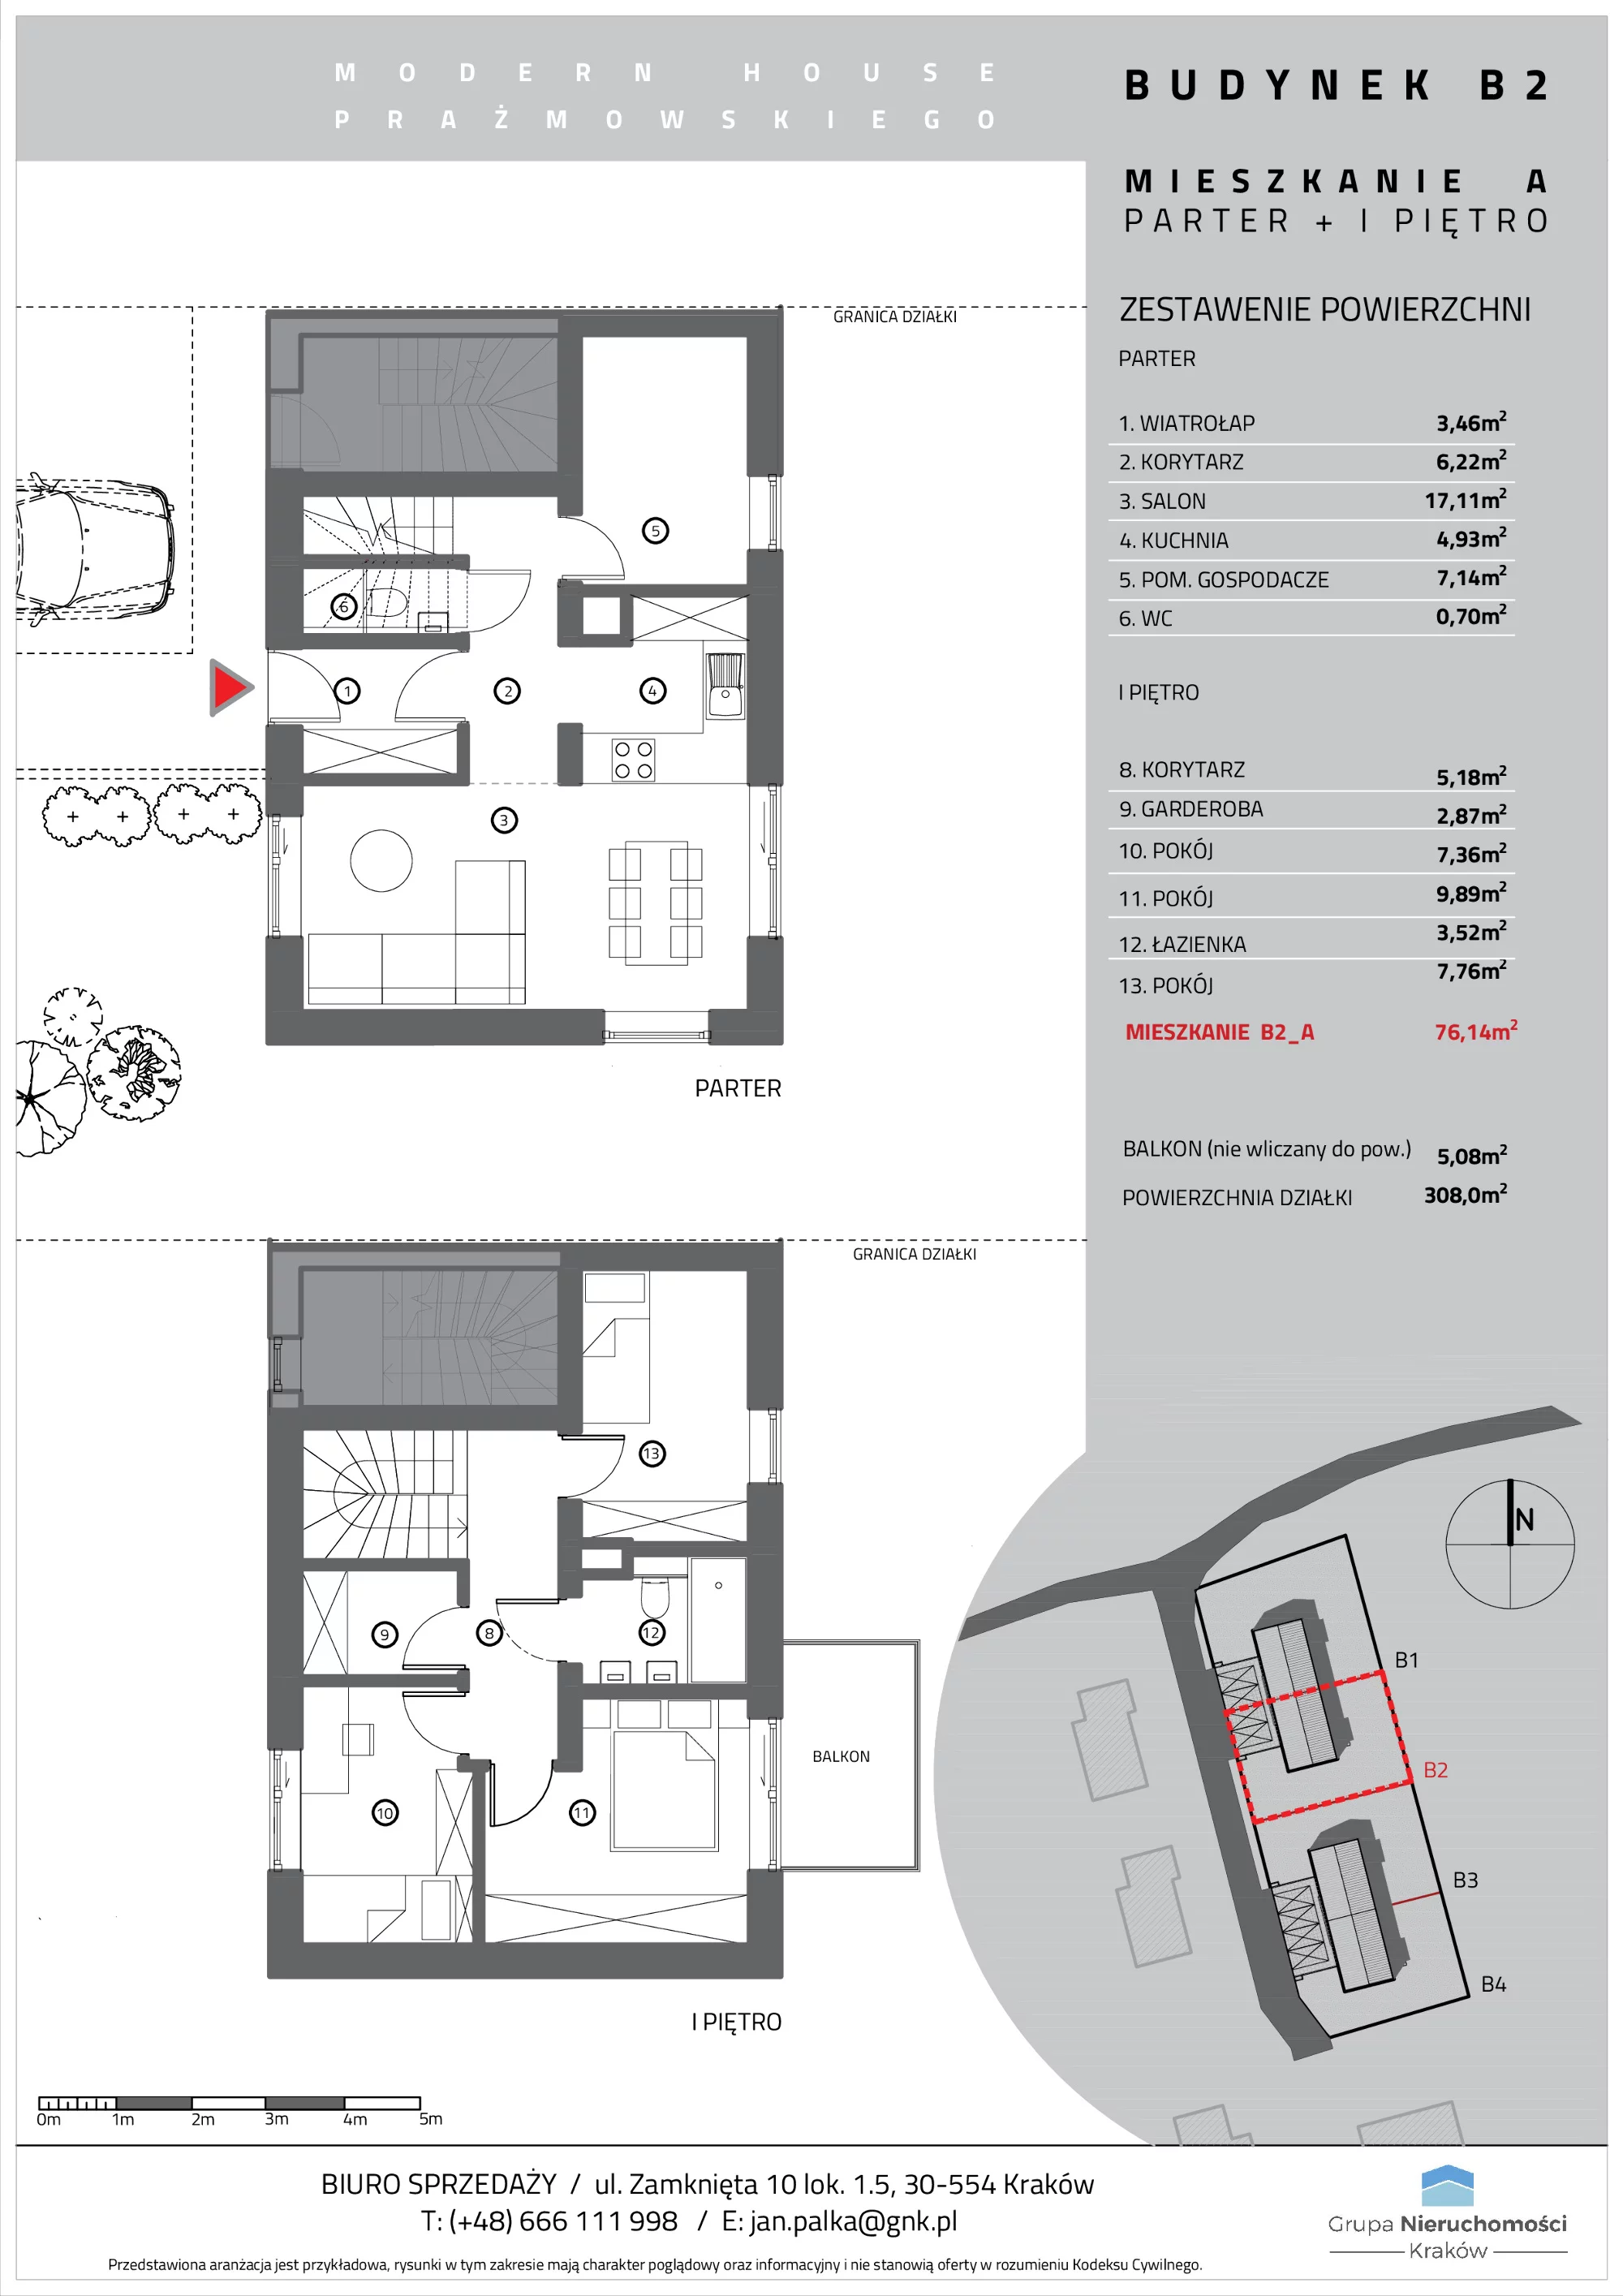 Mieszkanie 76,14 m², parter, oferta nr B2/A, Modern House Prażmowskiego, Kraków, Dębniki, Sidzina, ul. Prażmowskiego